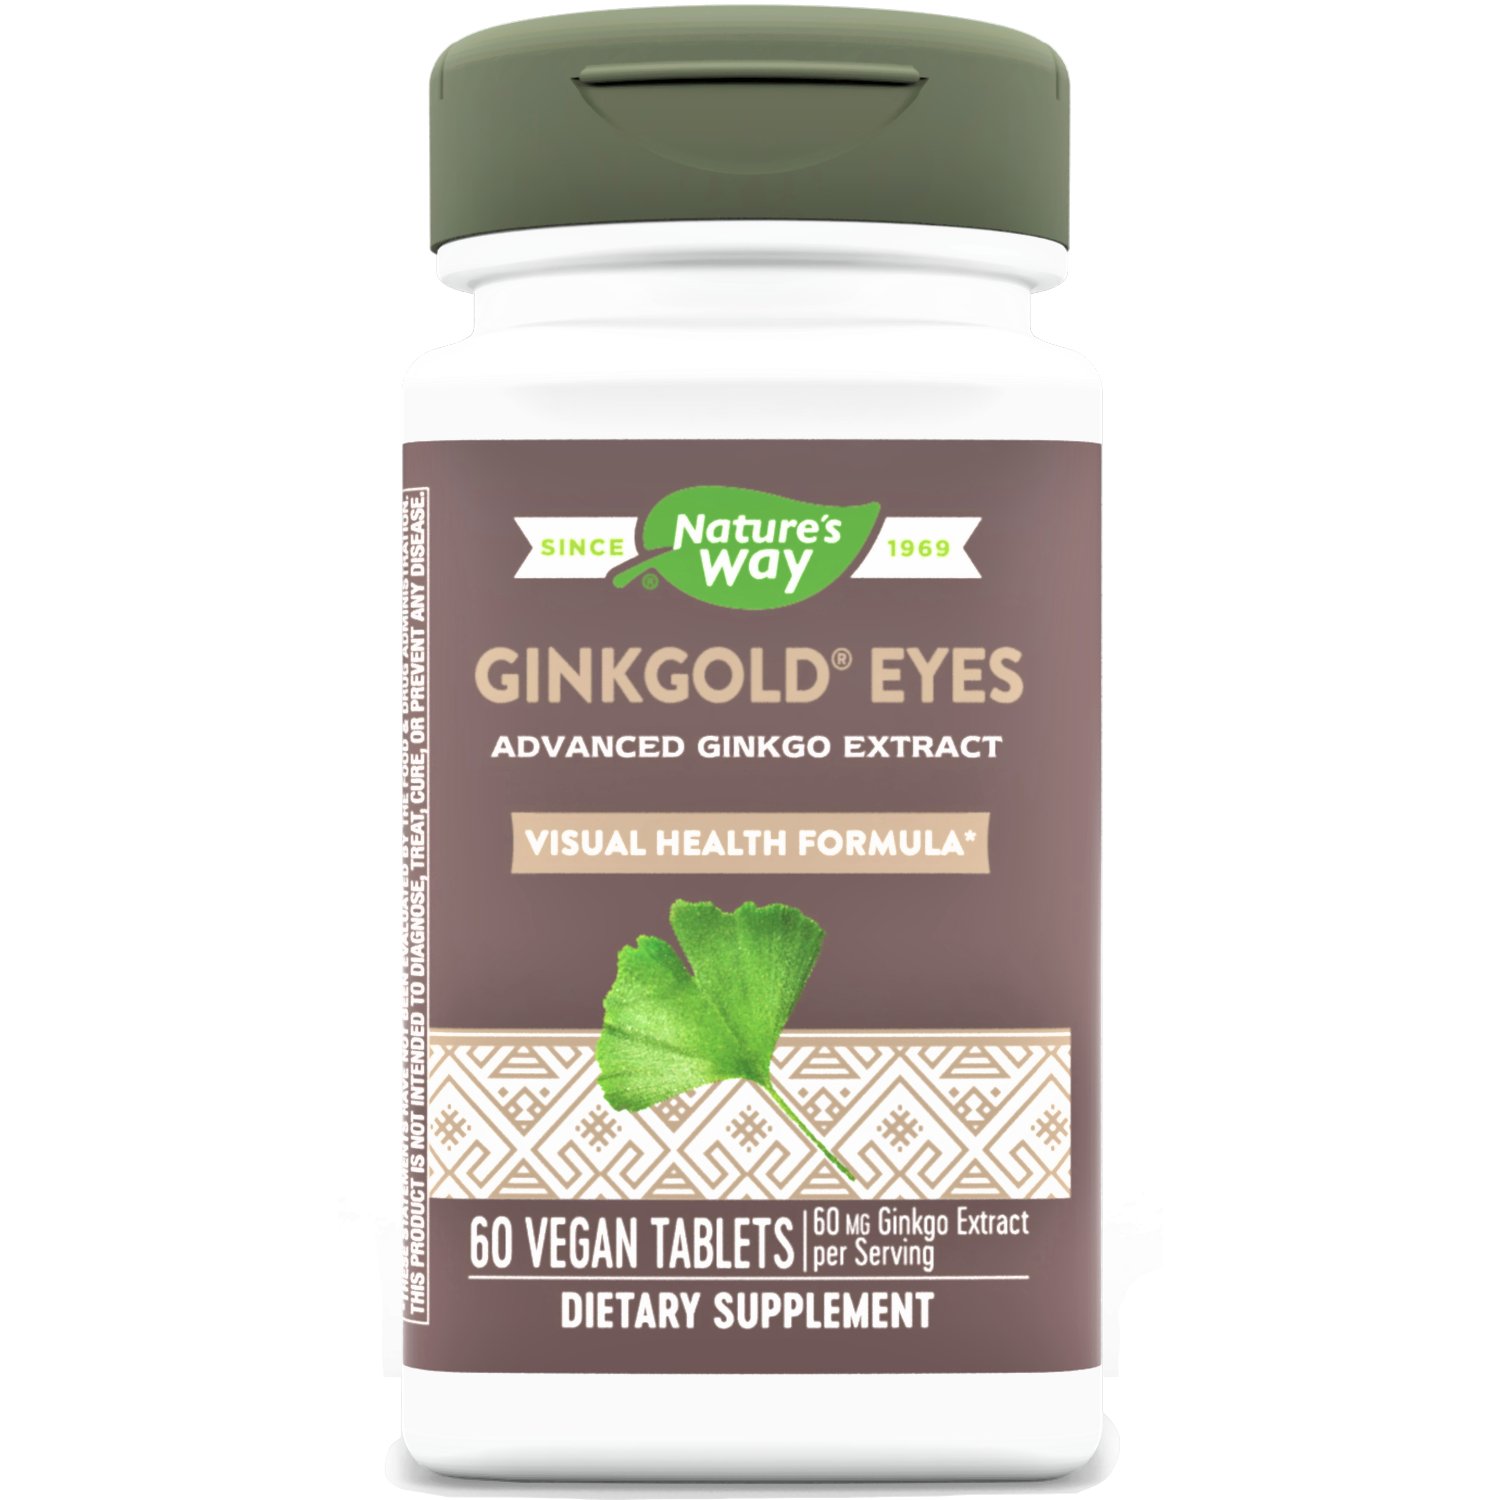 Nature's Way, Ginkgold Eyes, 60mg, 60 Vegan Tablets